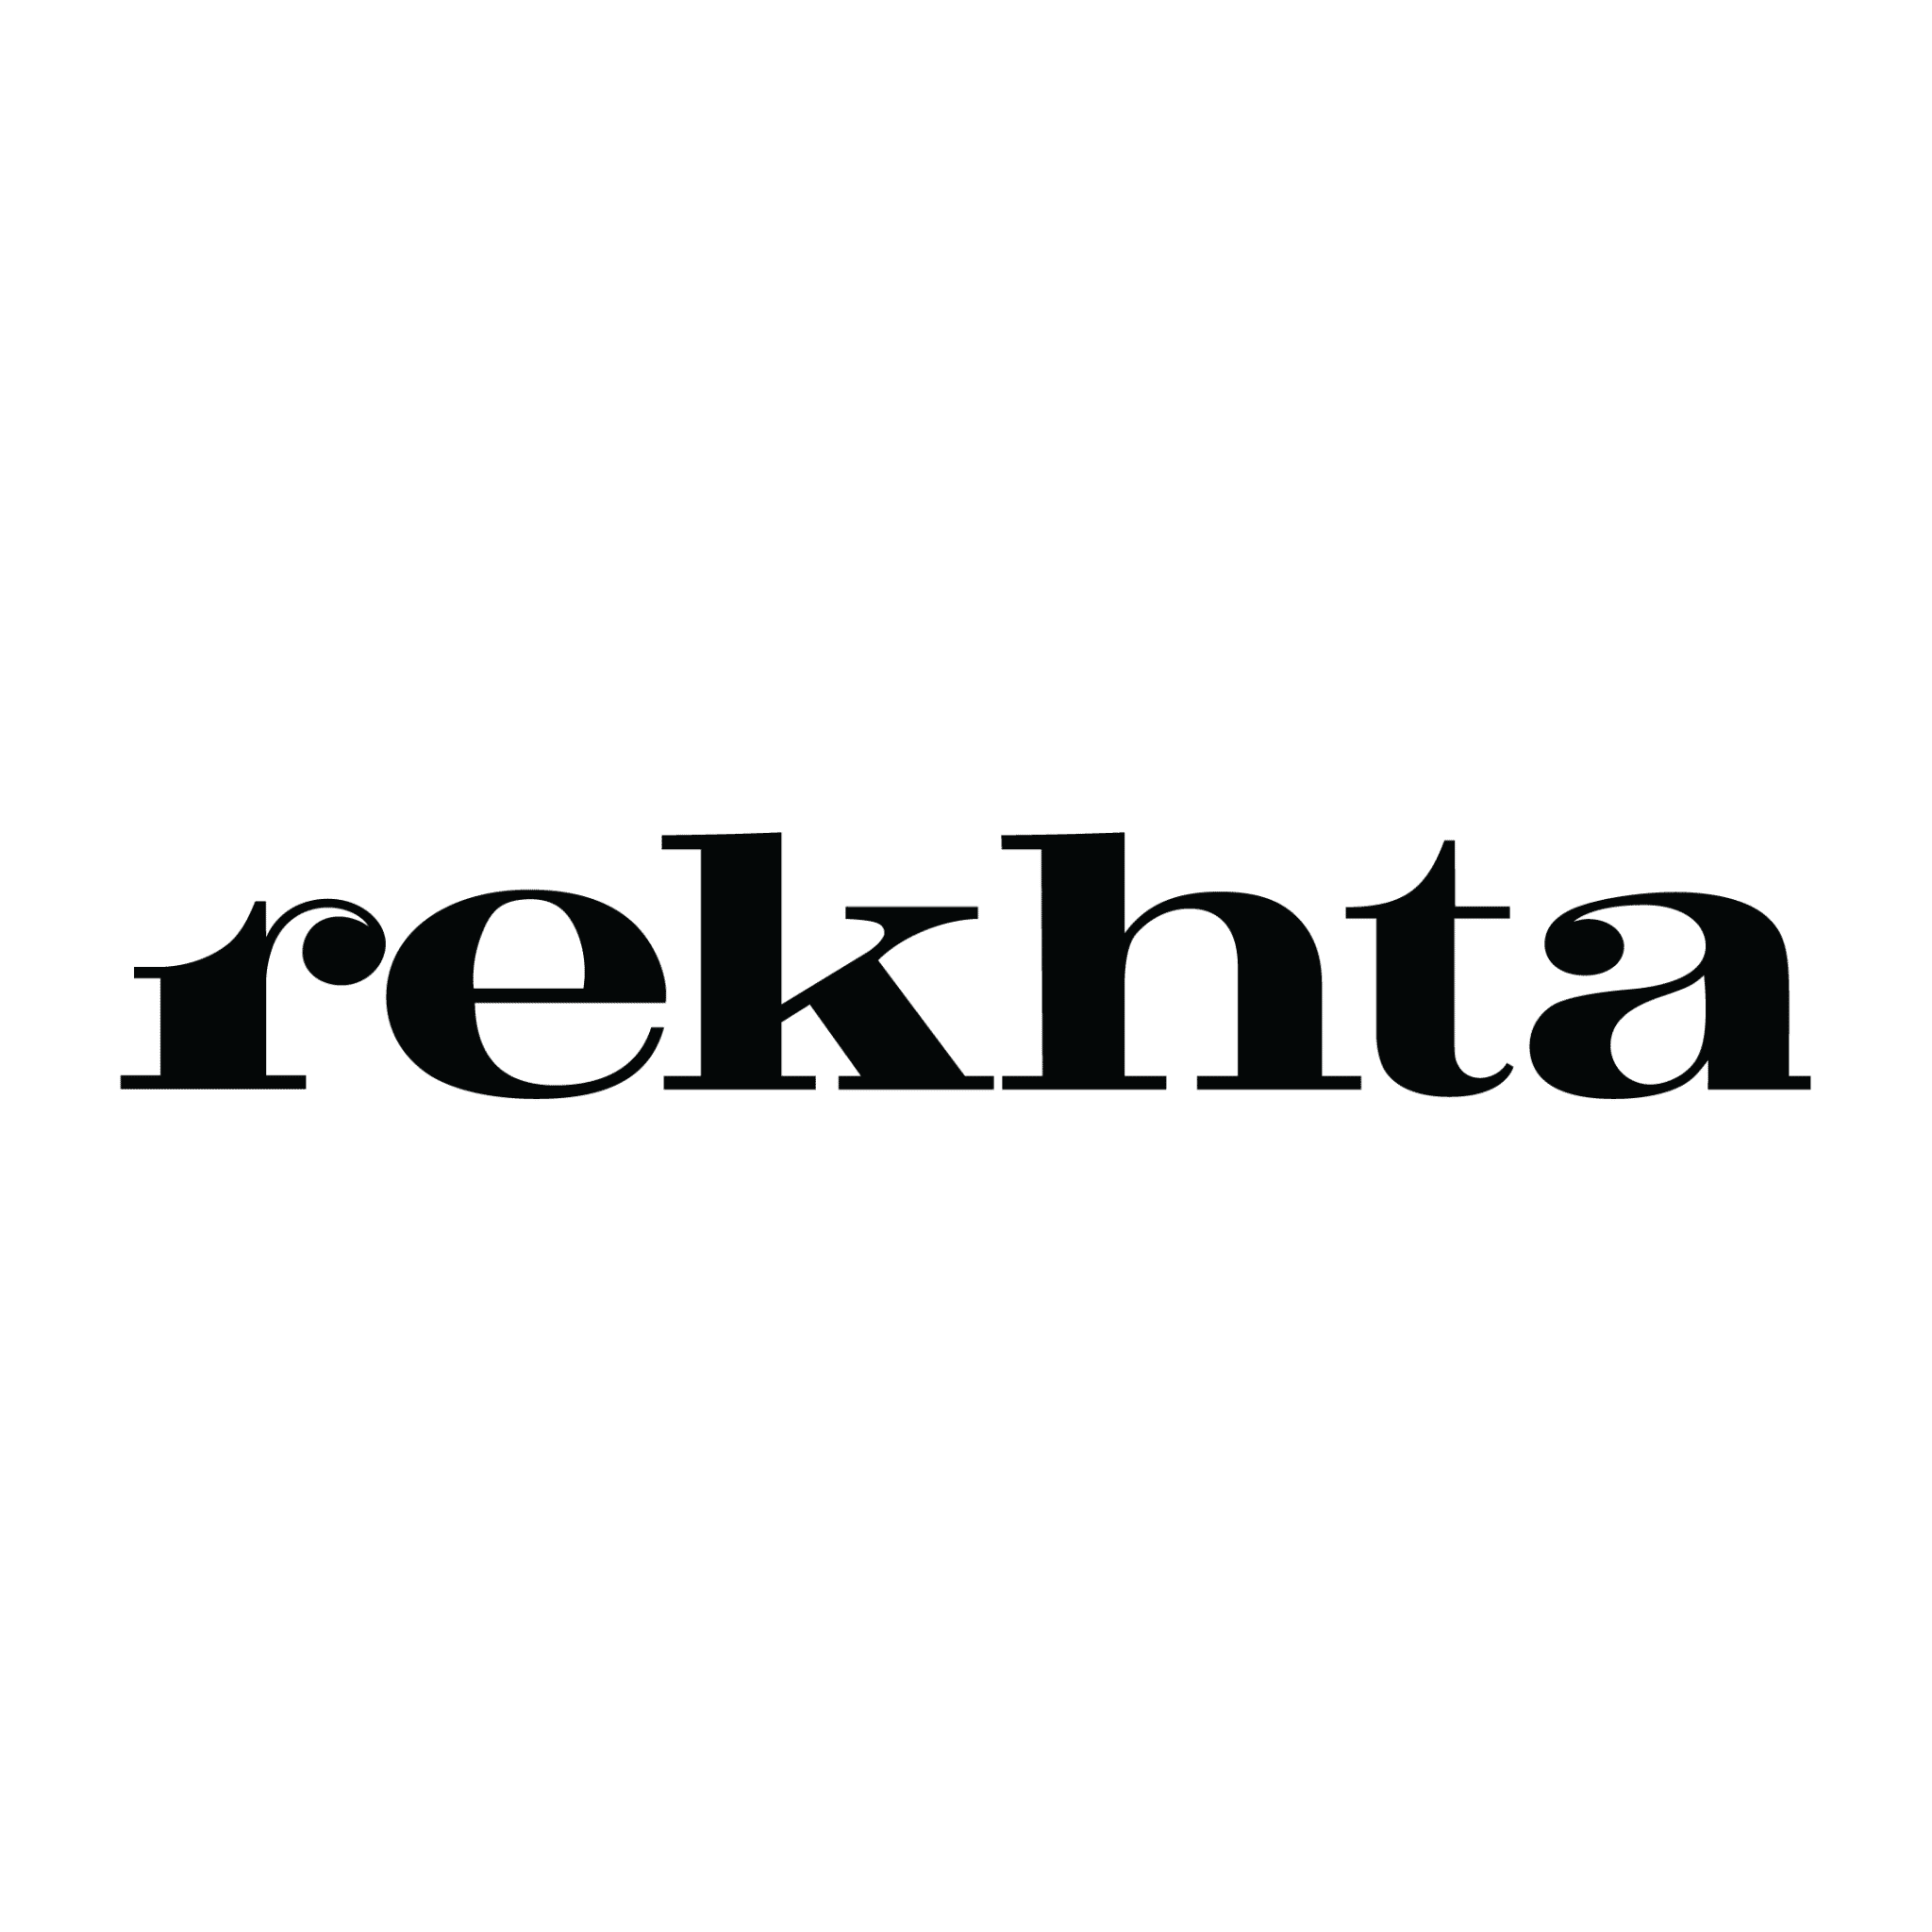 Rekhta Foundation